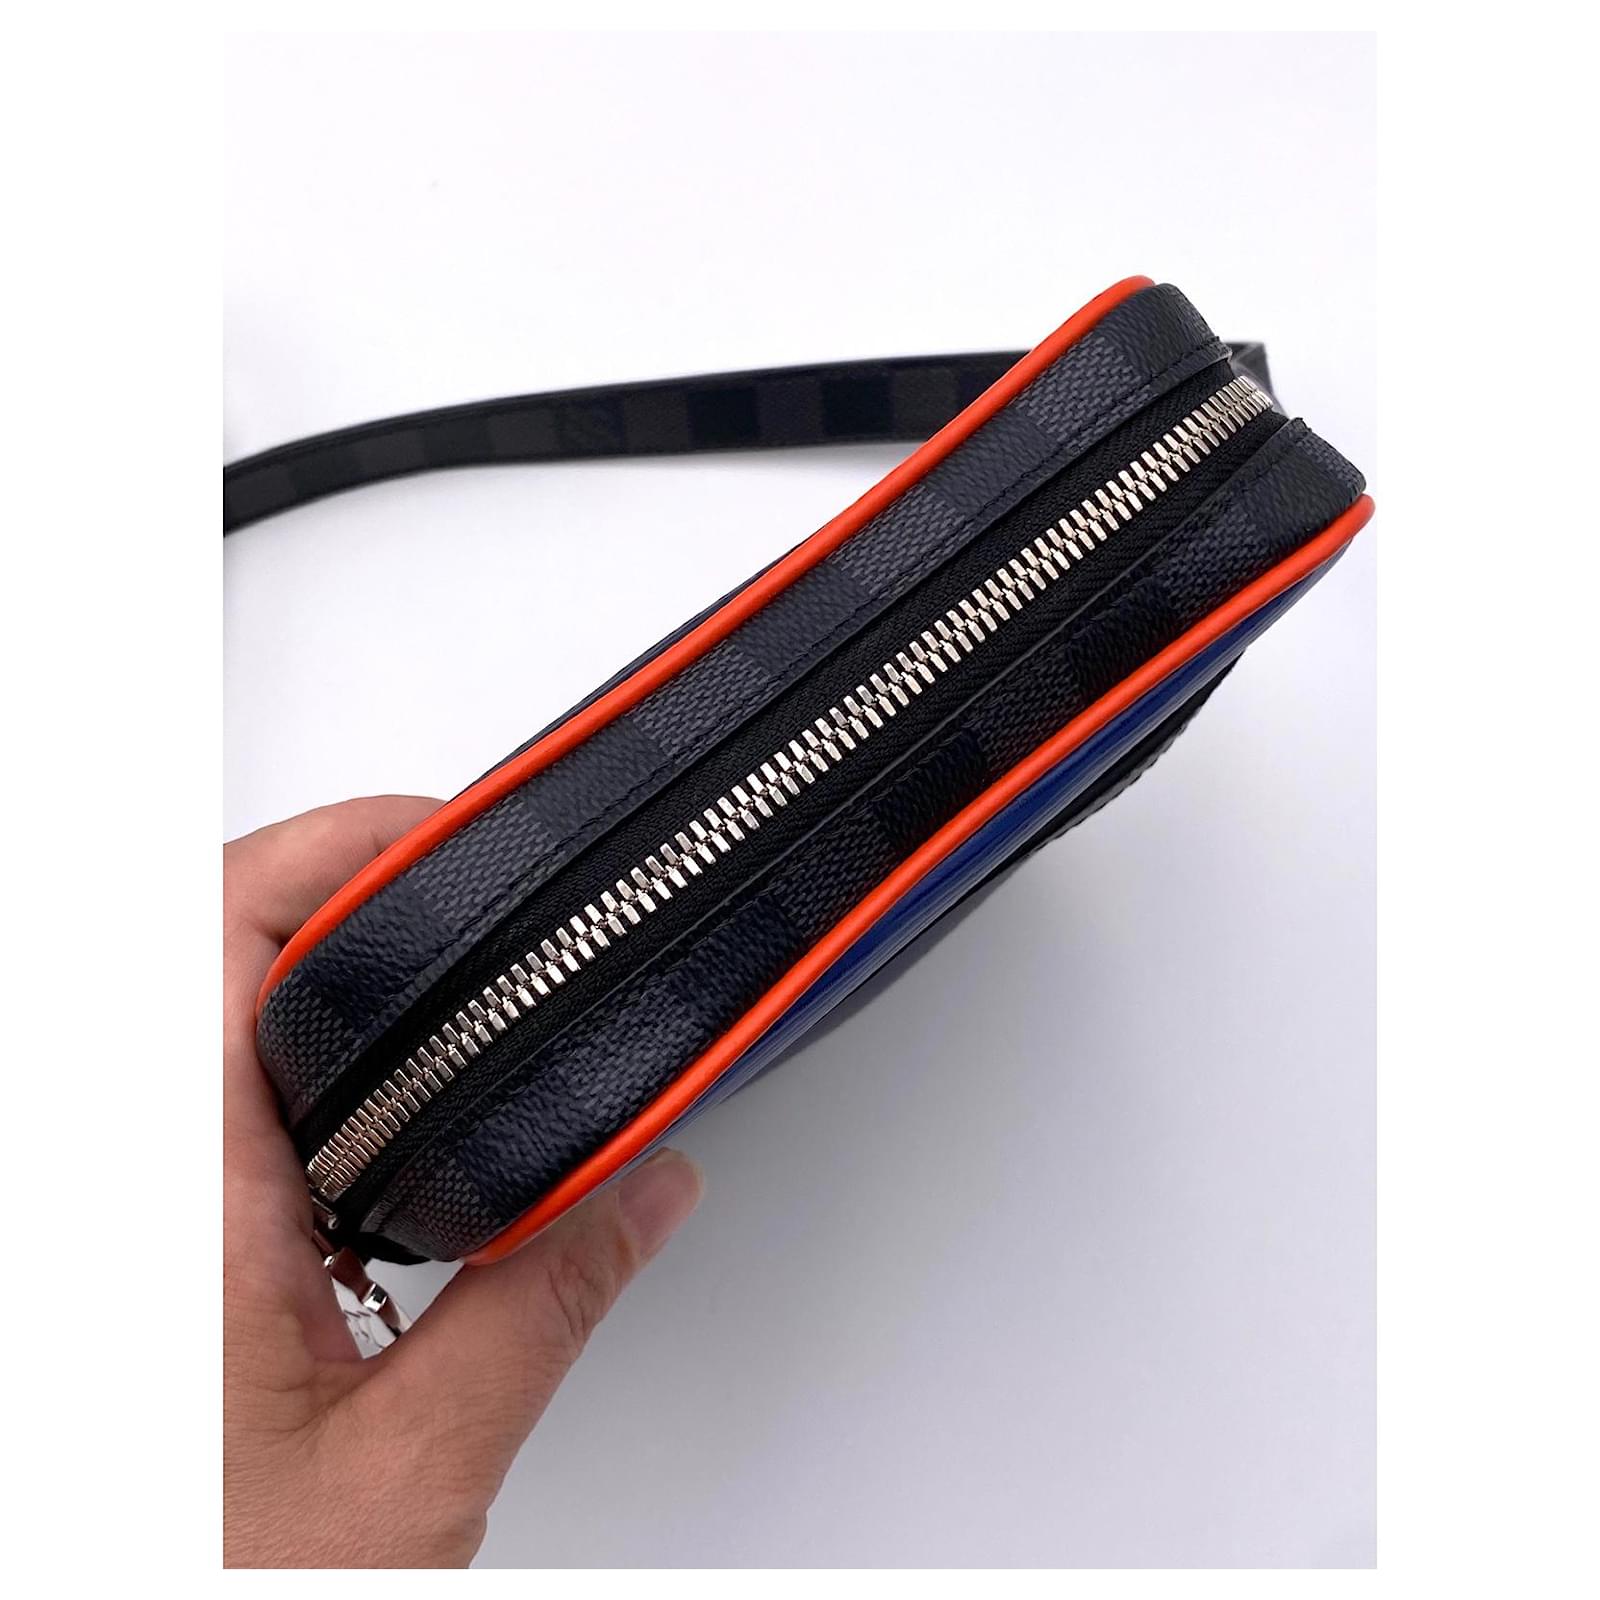 Danube Slim Black Epi Leather Bag – Poshbag Boutique